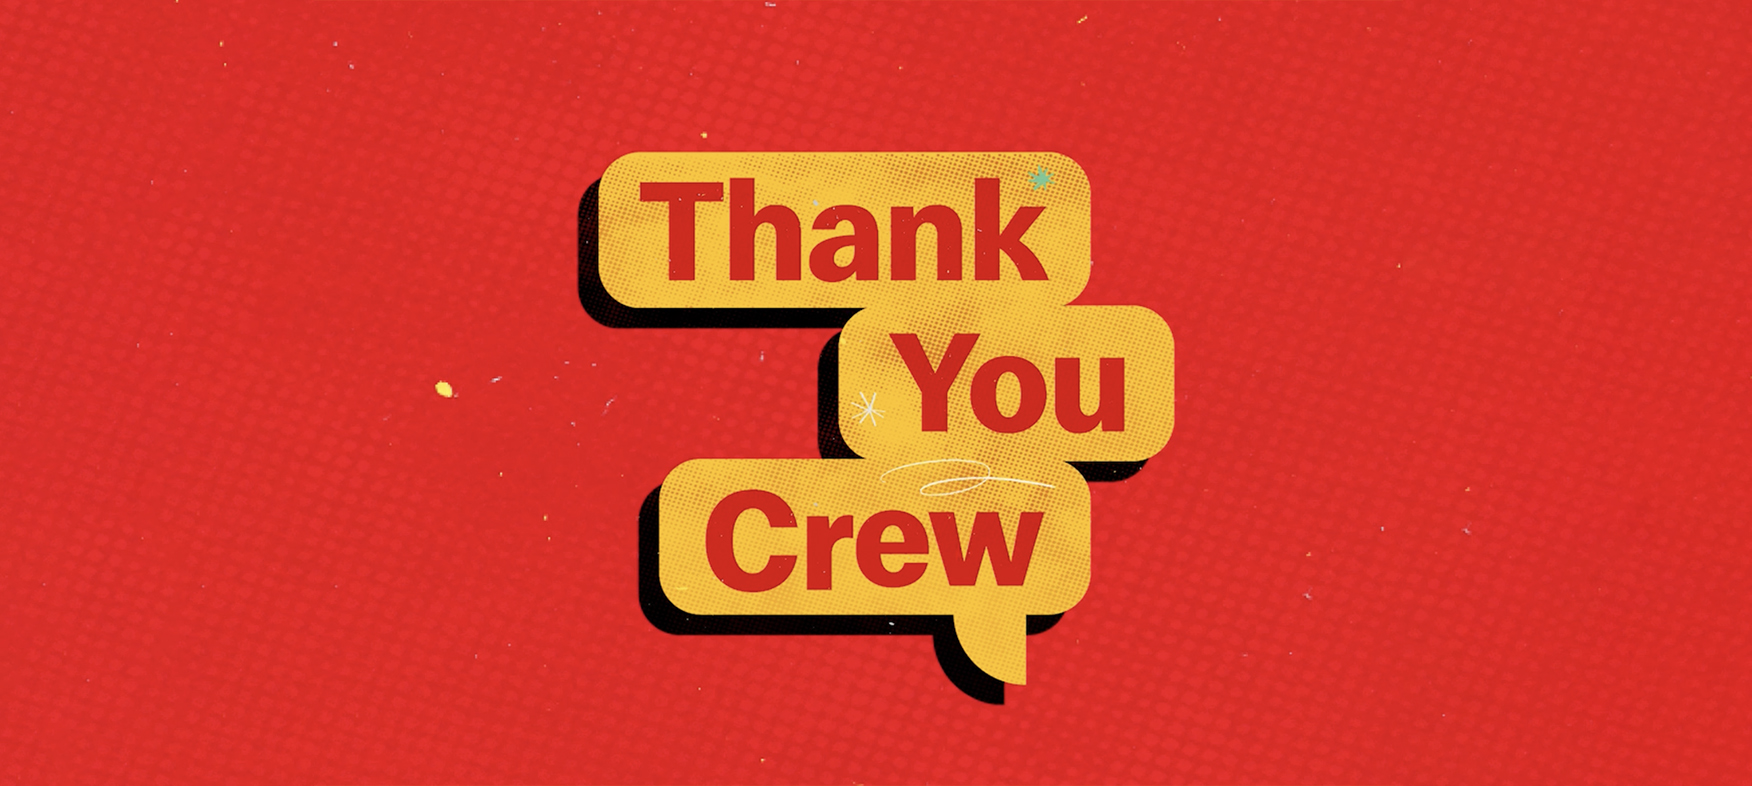 Thank You Crew logo